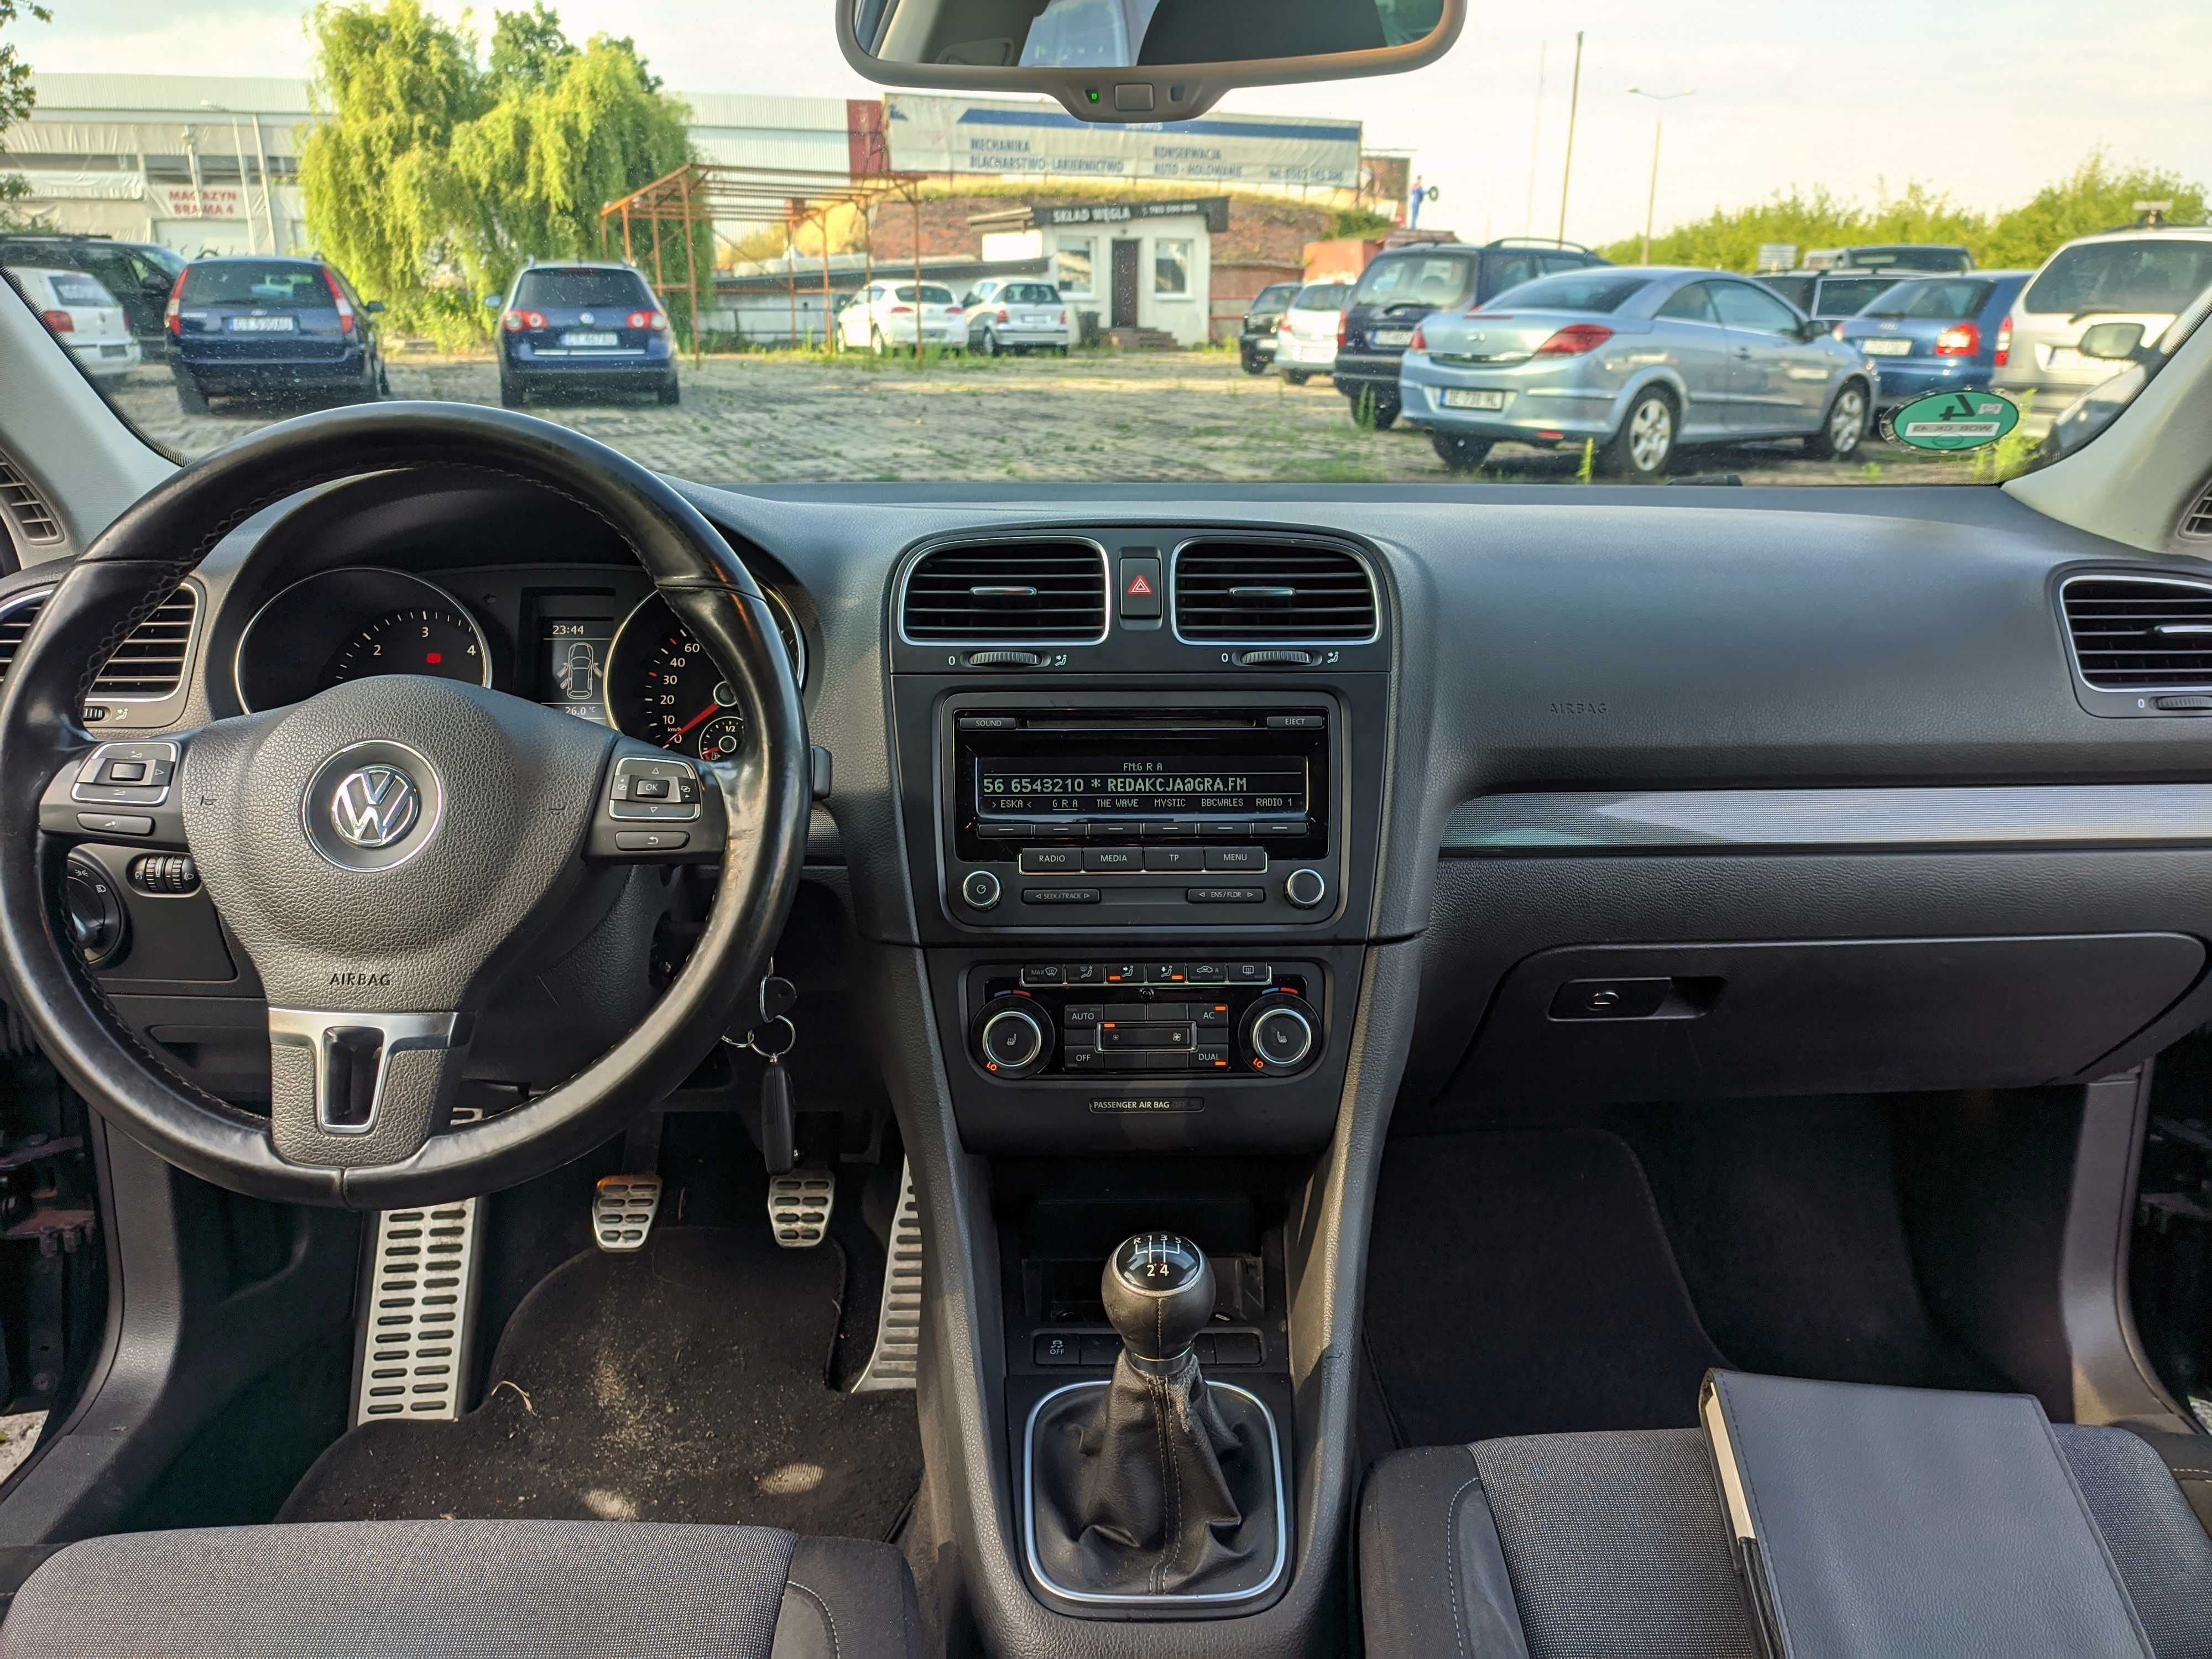 VW Golf 6 VI 2011 rok 1,6 TDI 105 kM 2xklimatronic ZAREJESTROWANY